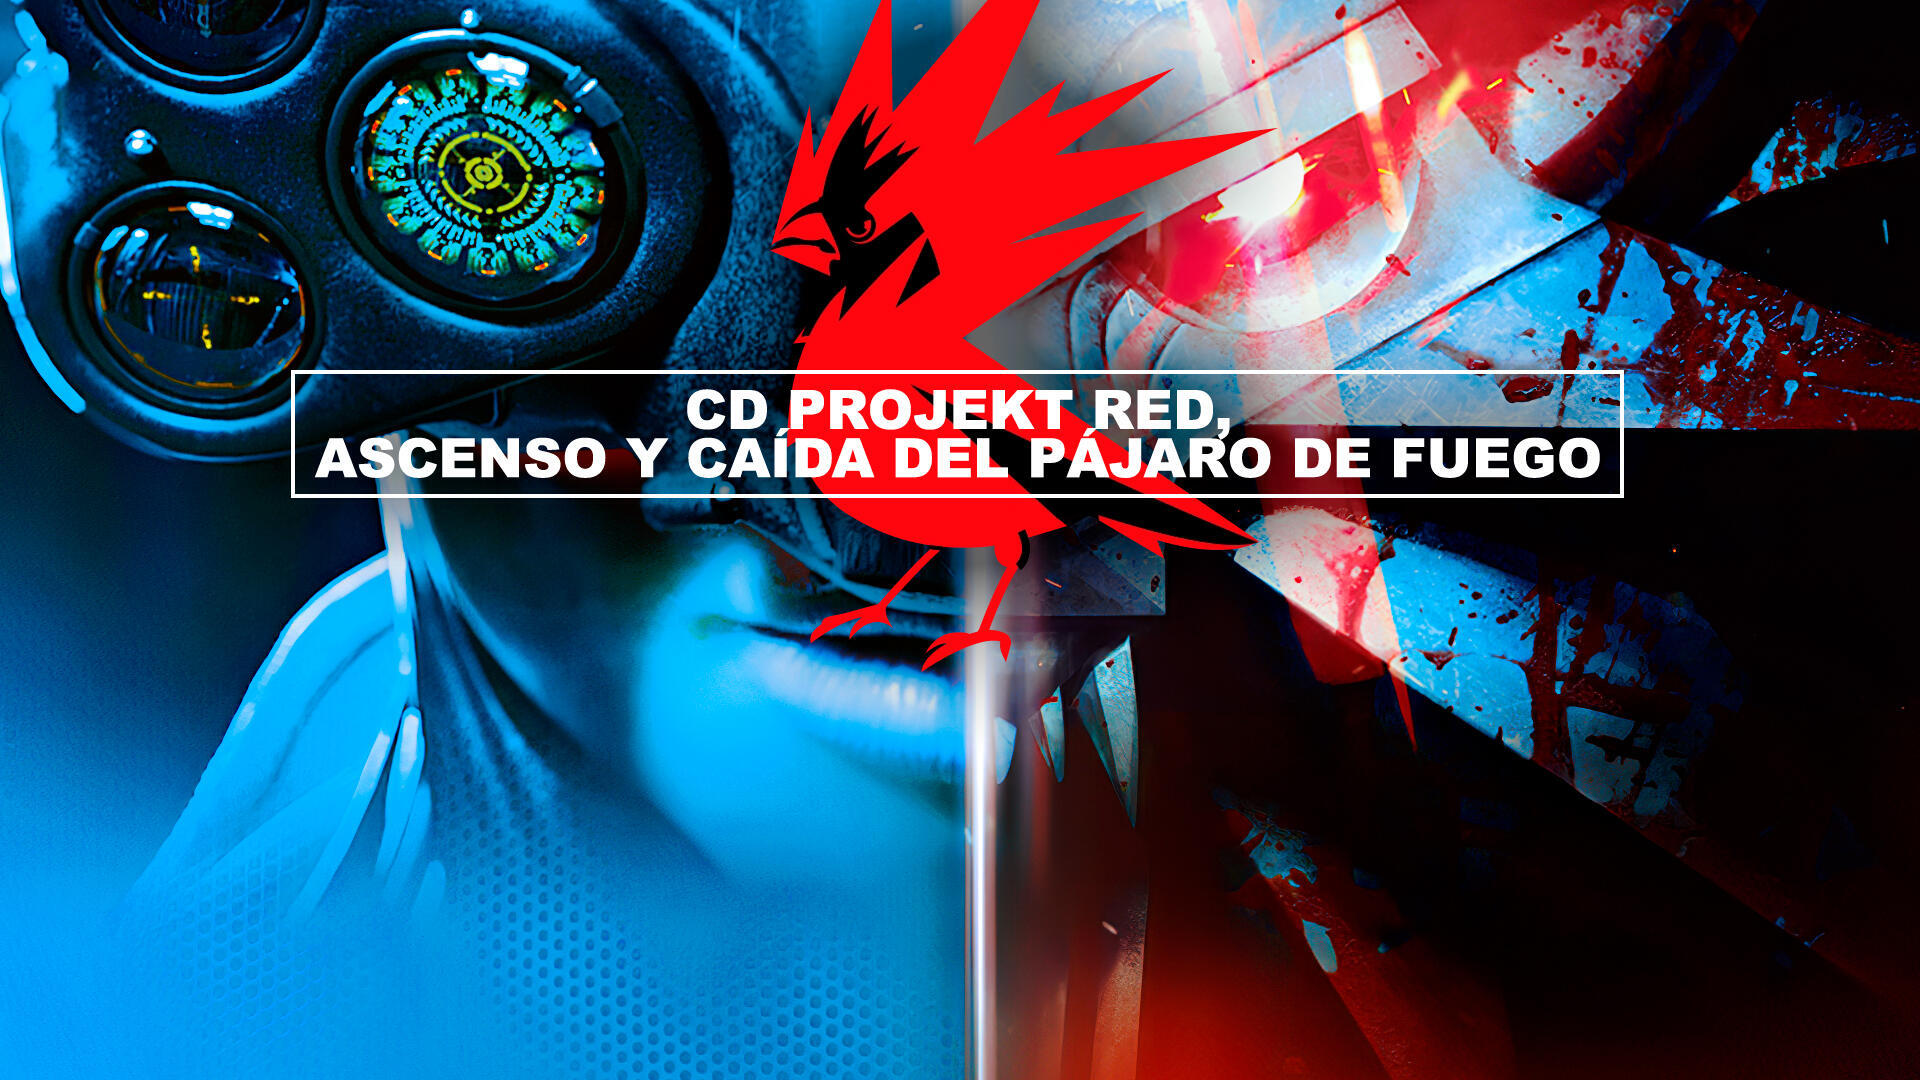 CD Projekt RED, ascenso y cada del pjaro de fuego